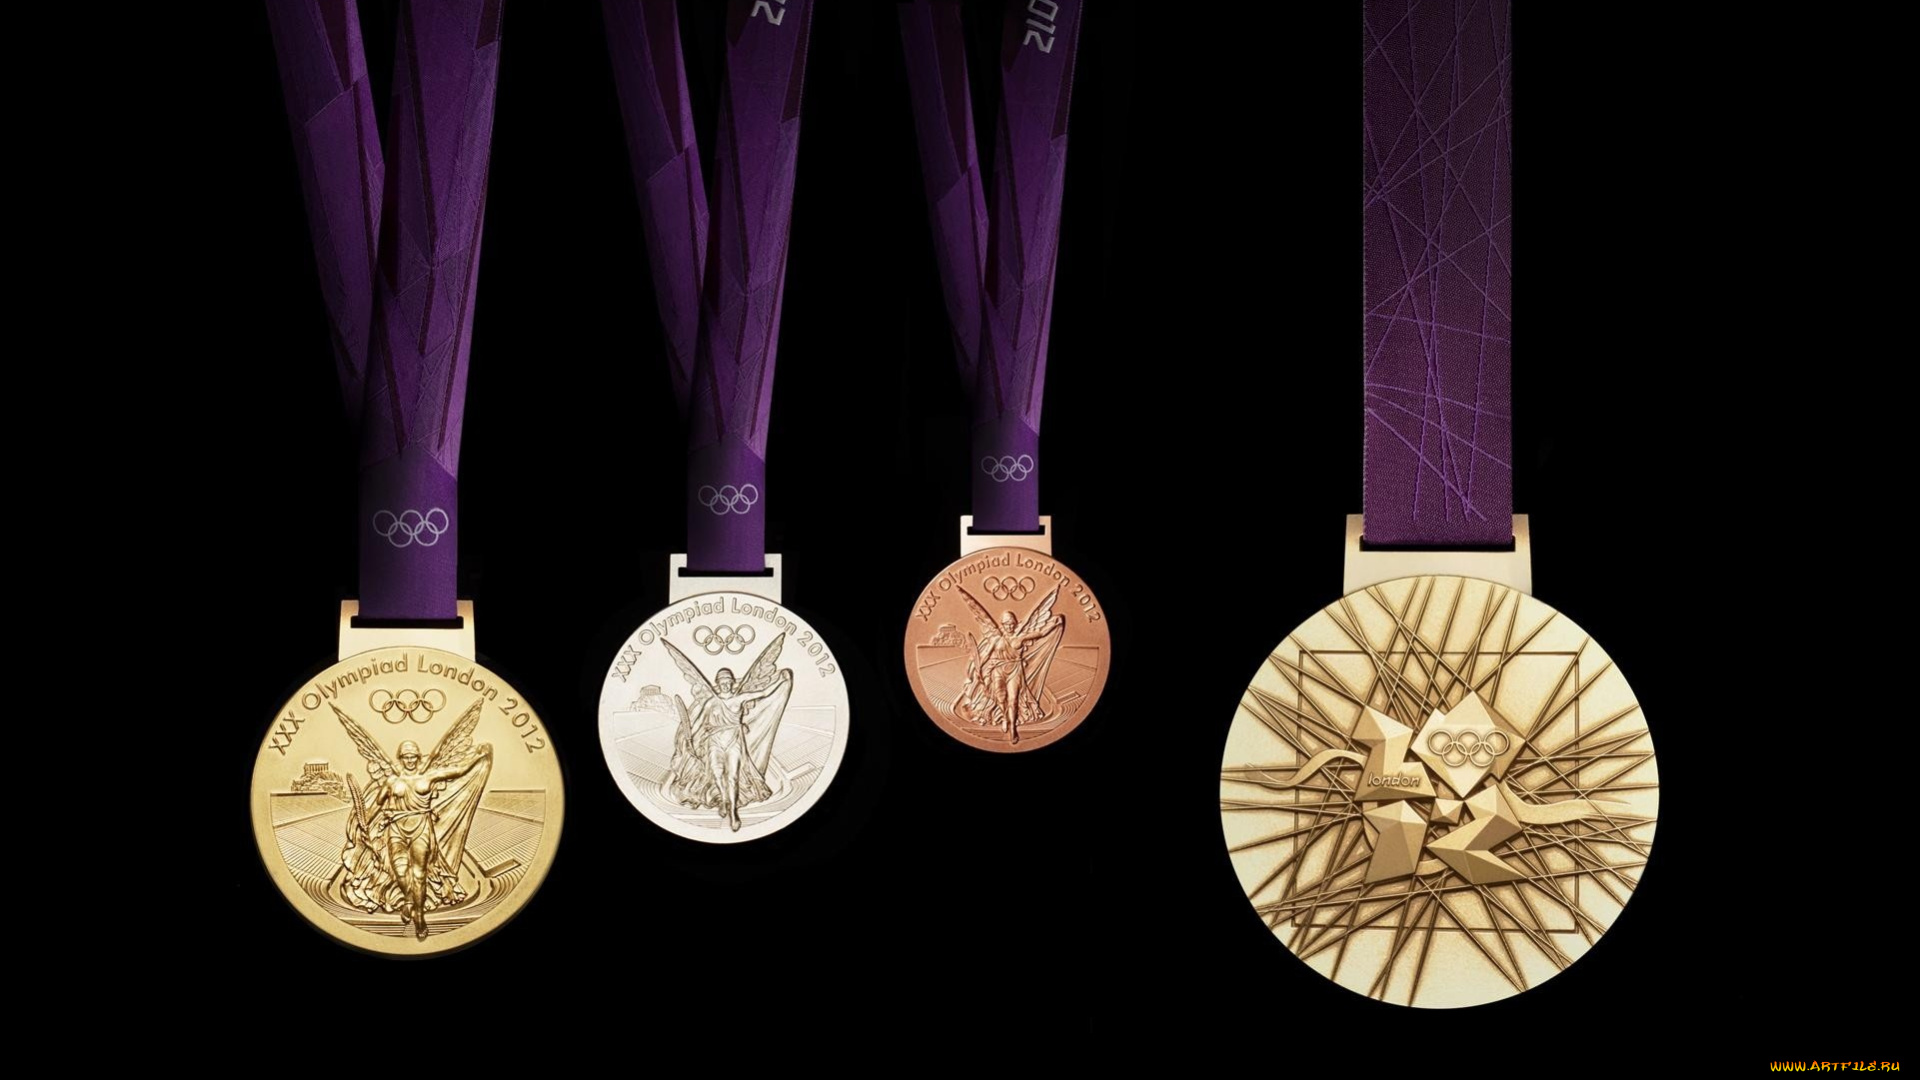 Олимпийская медаль 2014 года. Лондон Паралимпийские игры медали 2012. Олимпийские медали на Олимпийских играх 2012. Золотая медаль Олимпийских игр 2012. Медали для олимпийцев.